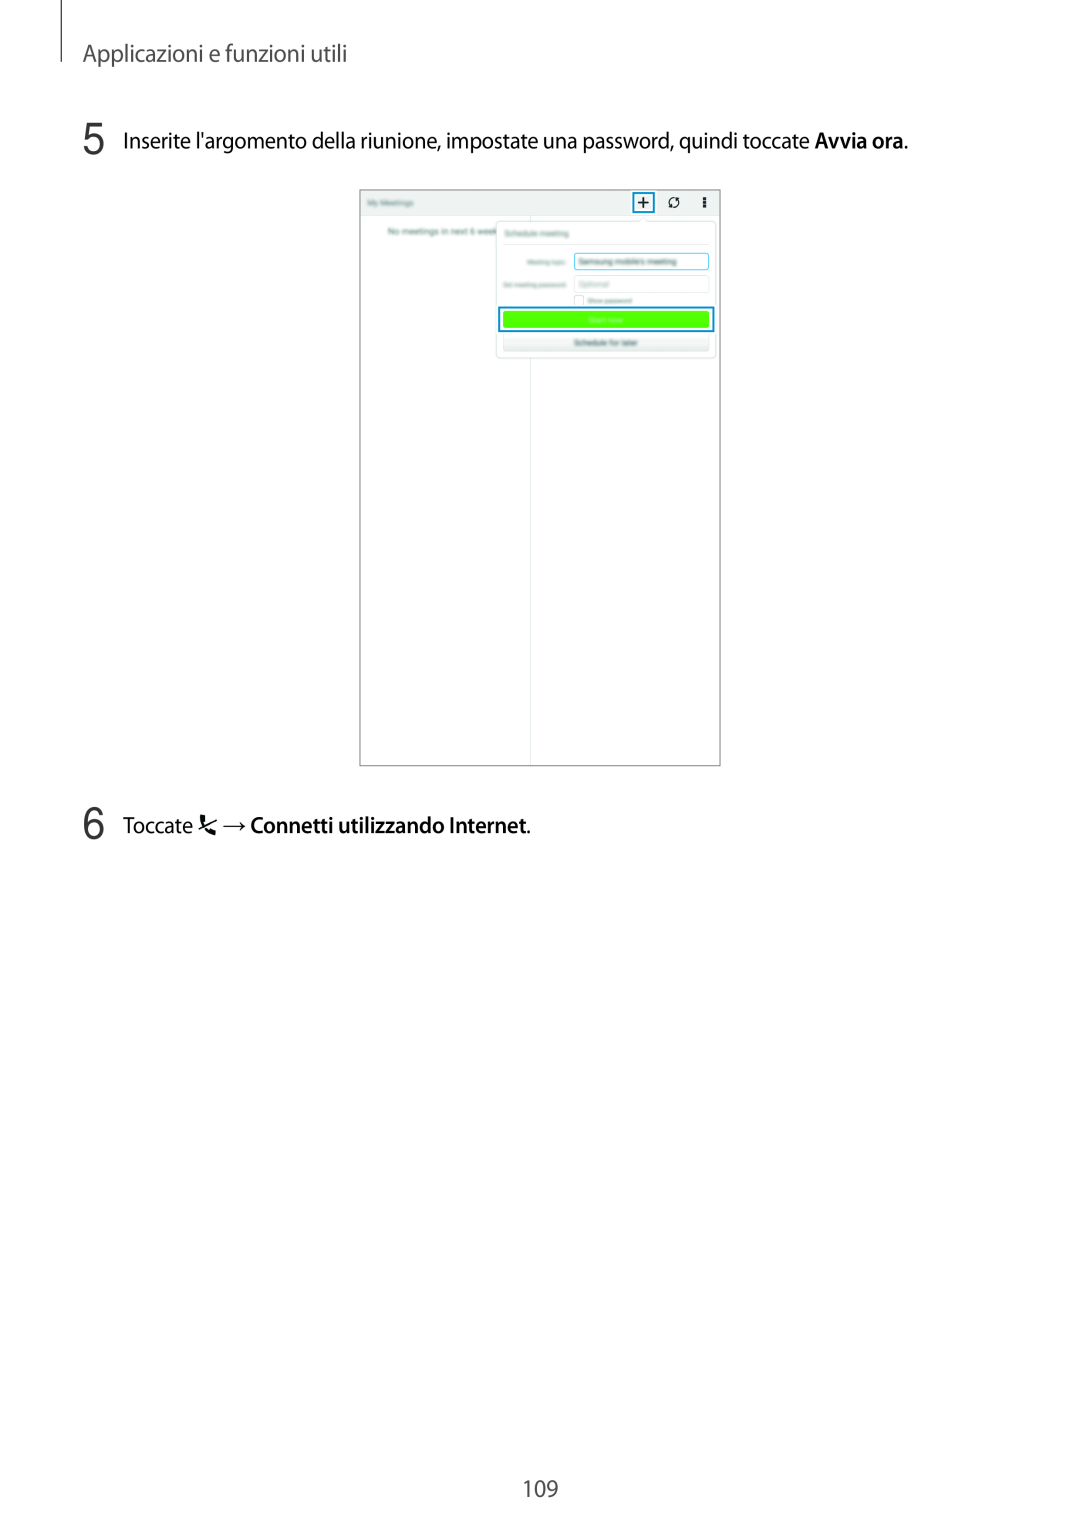 Samsung SM-T700NZWAITV, SM-T700NZWATUR manual Toccate →Connetti utilizzando Internet, Applicazioni e funzioni utili 